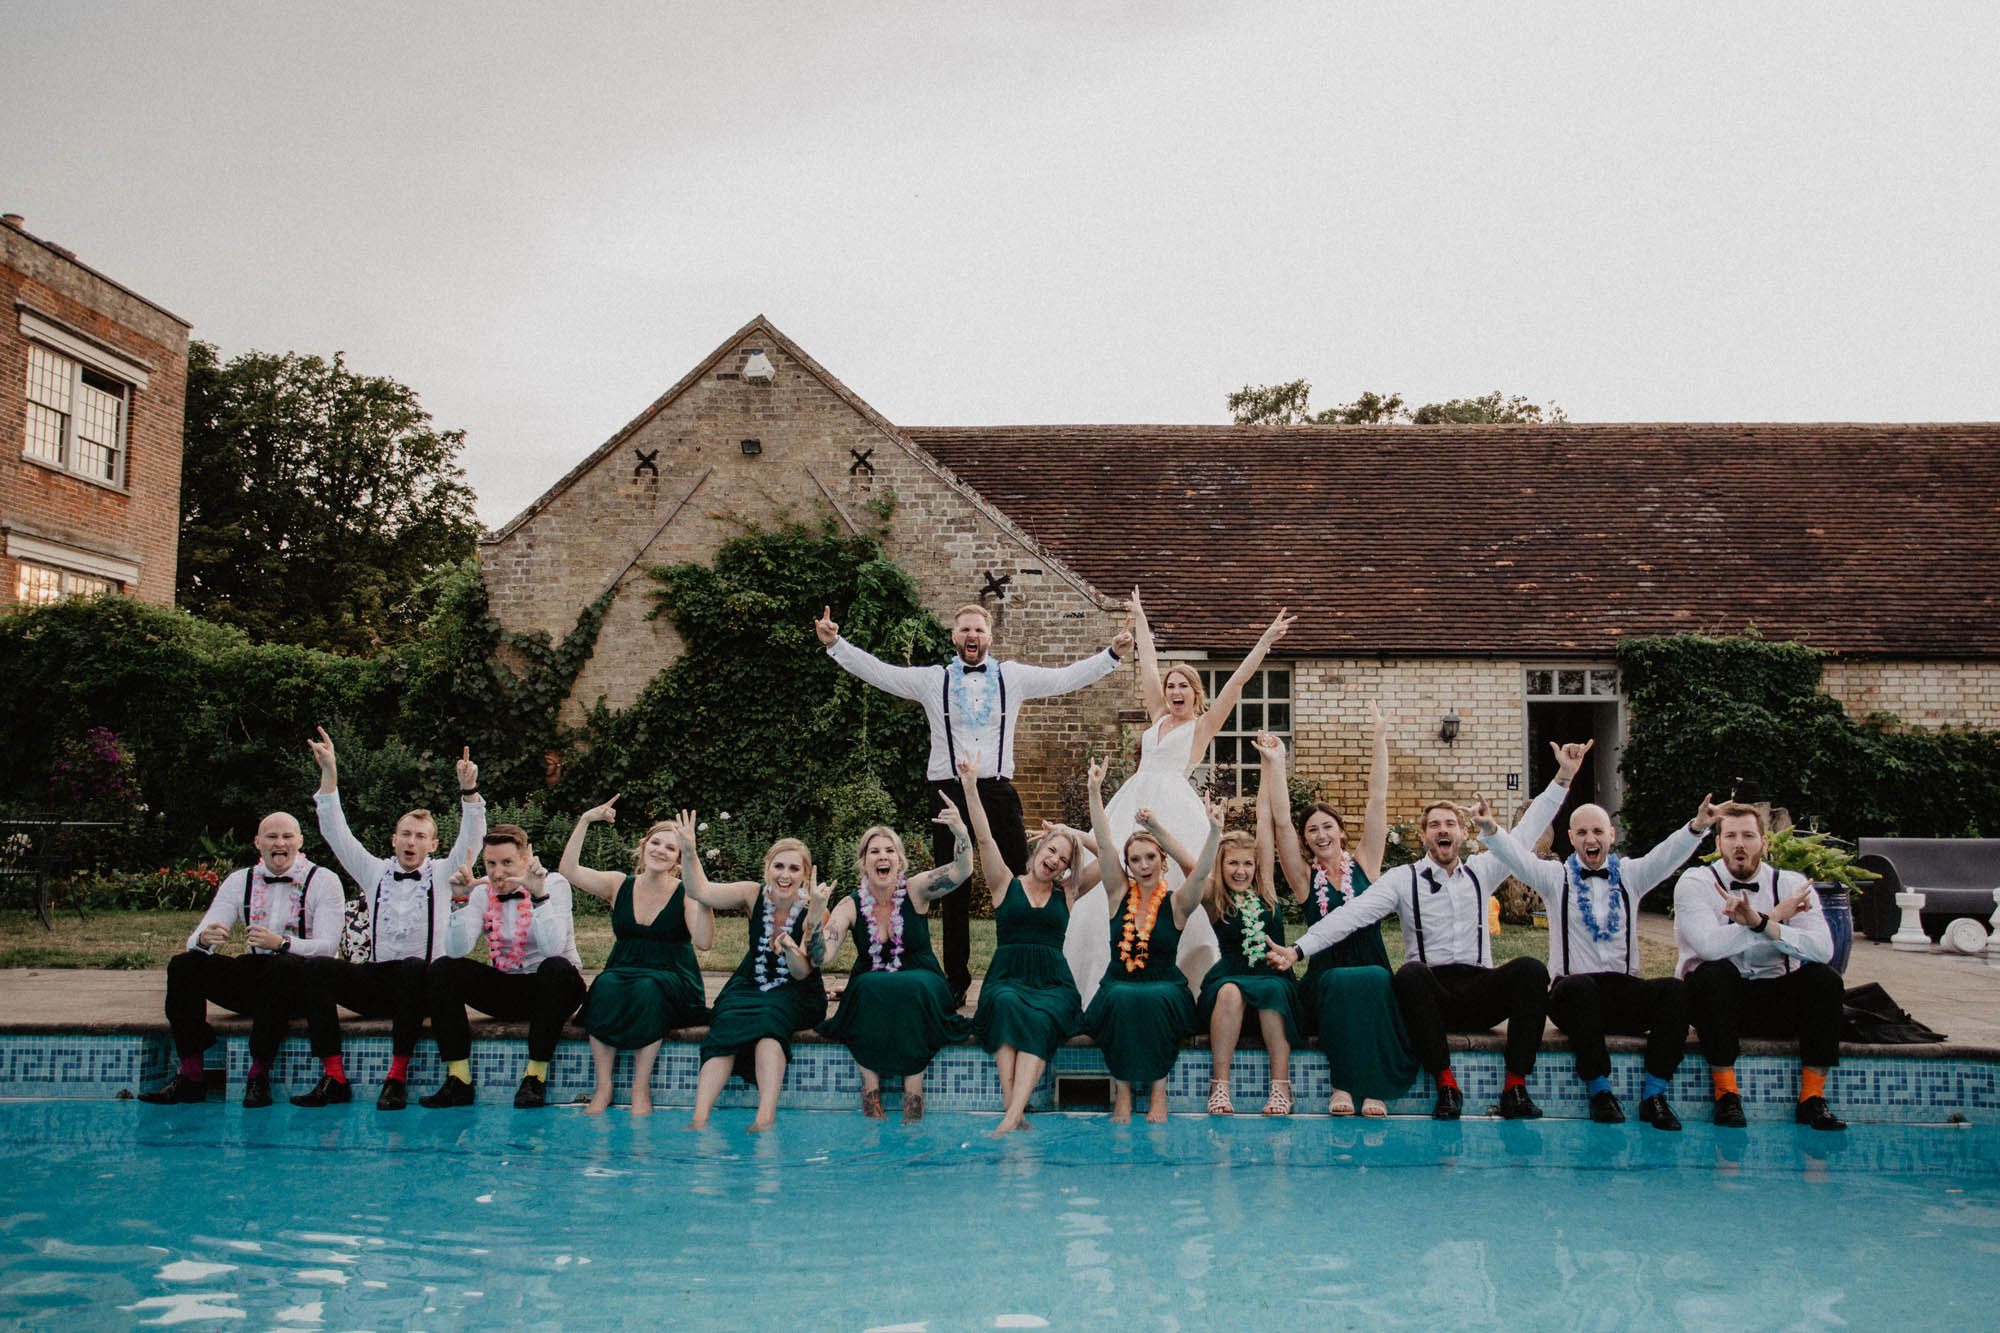 Bedfordshire manor house wedding venue Shortmead pool wedding celebration